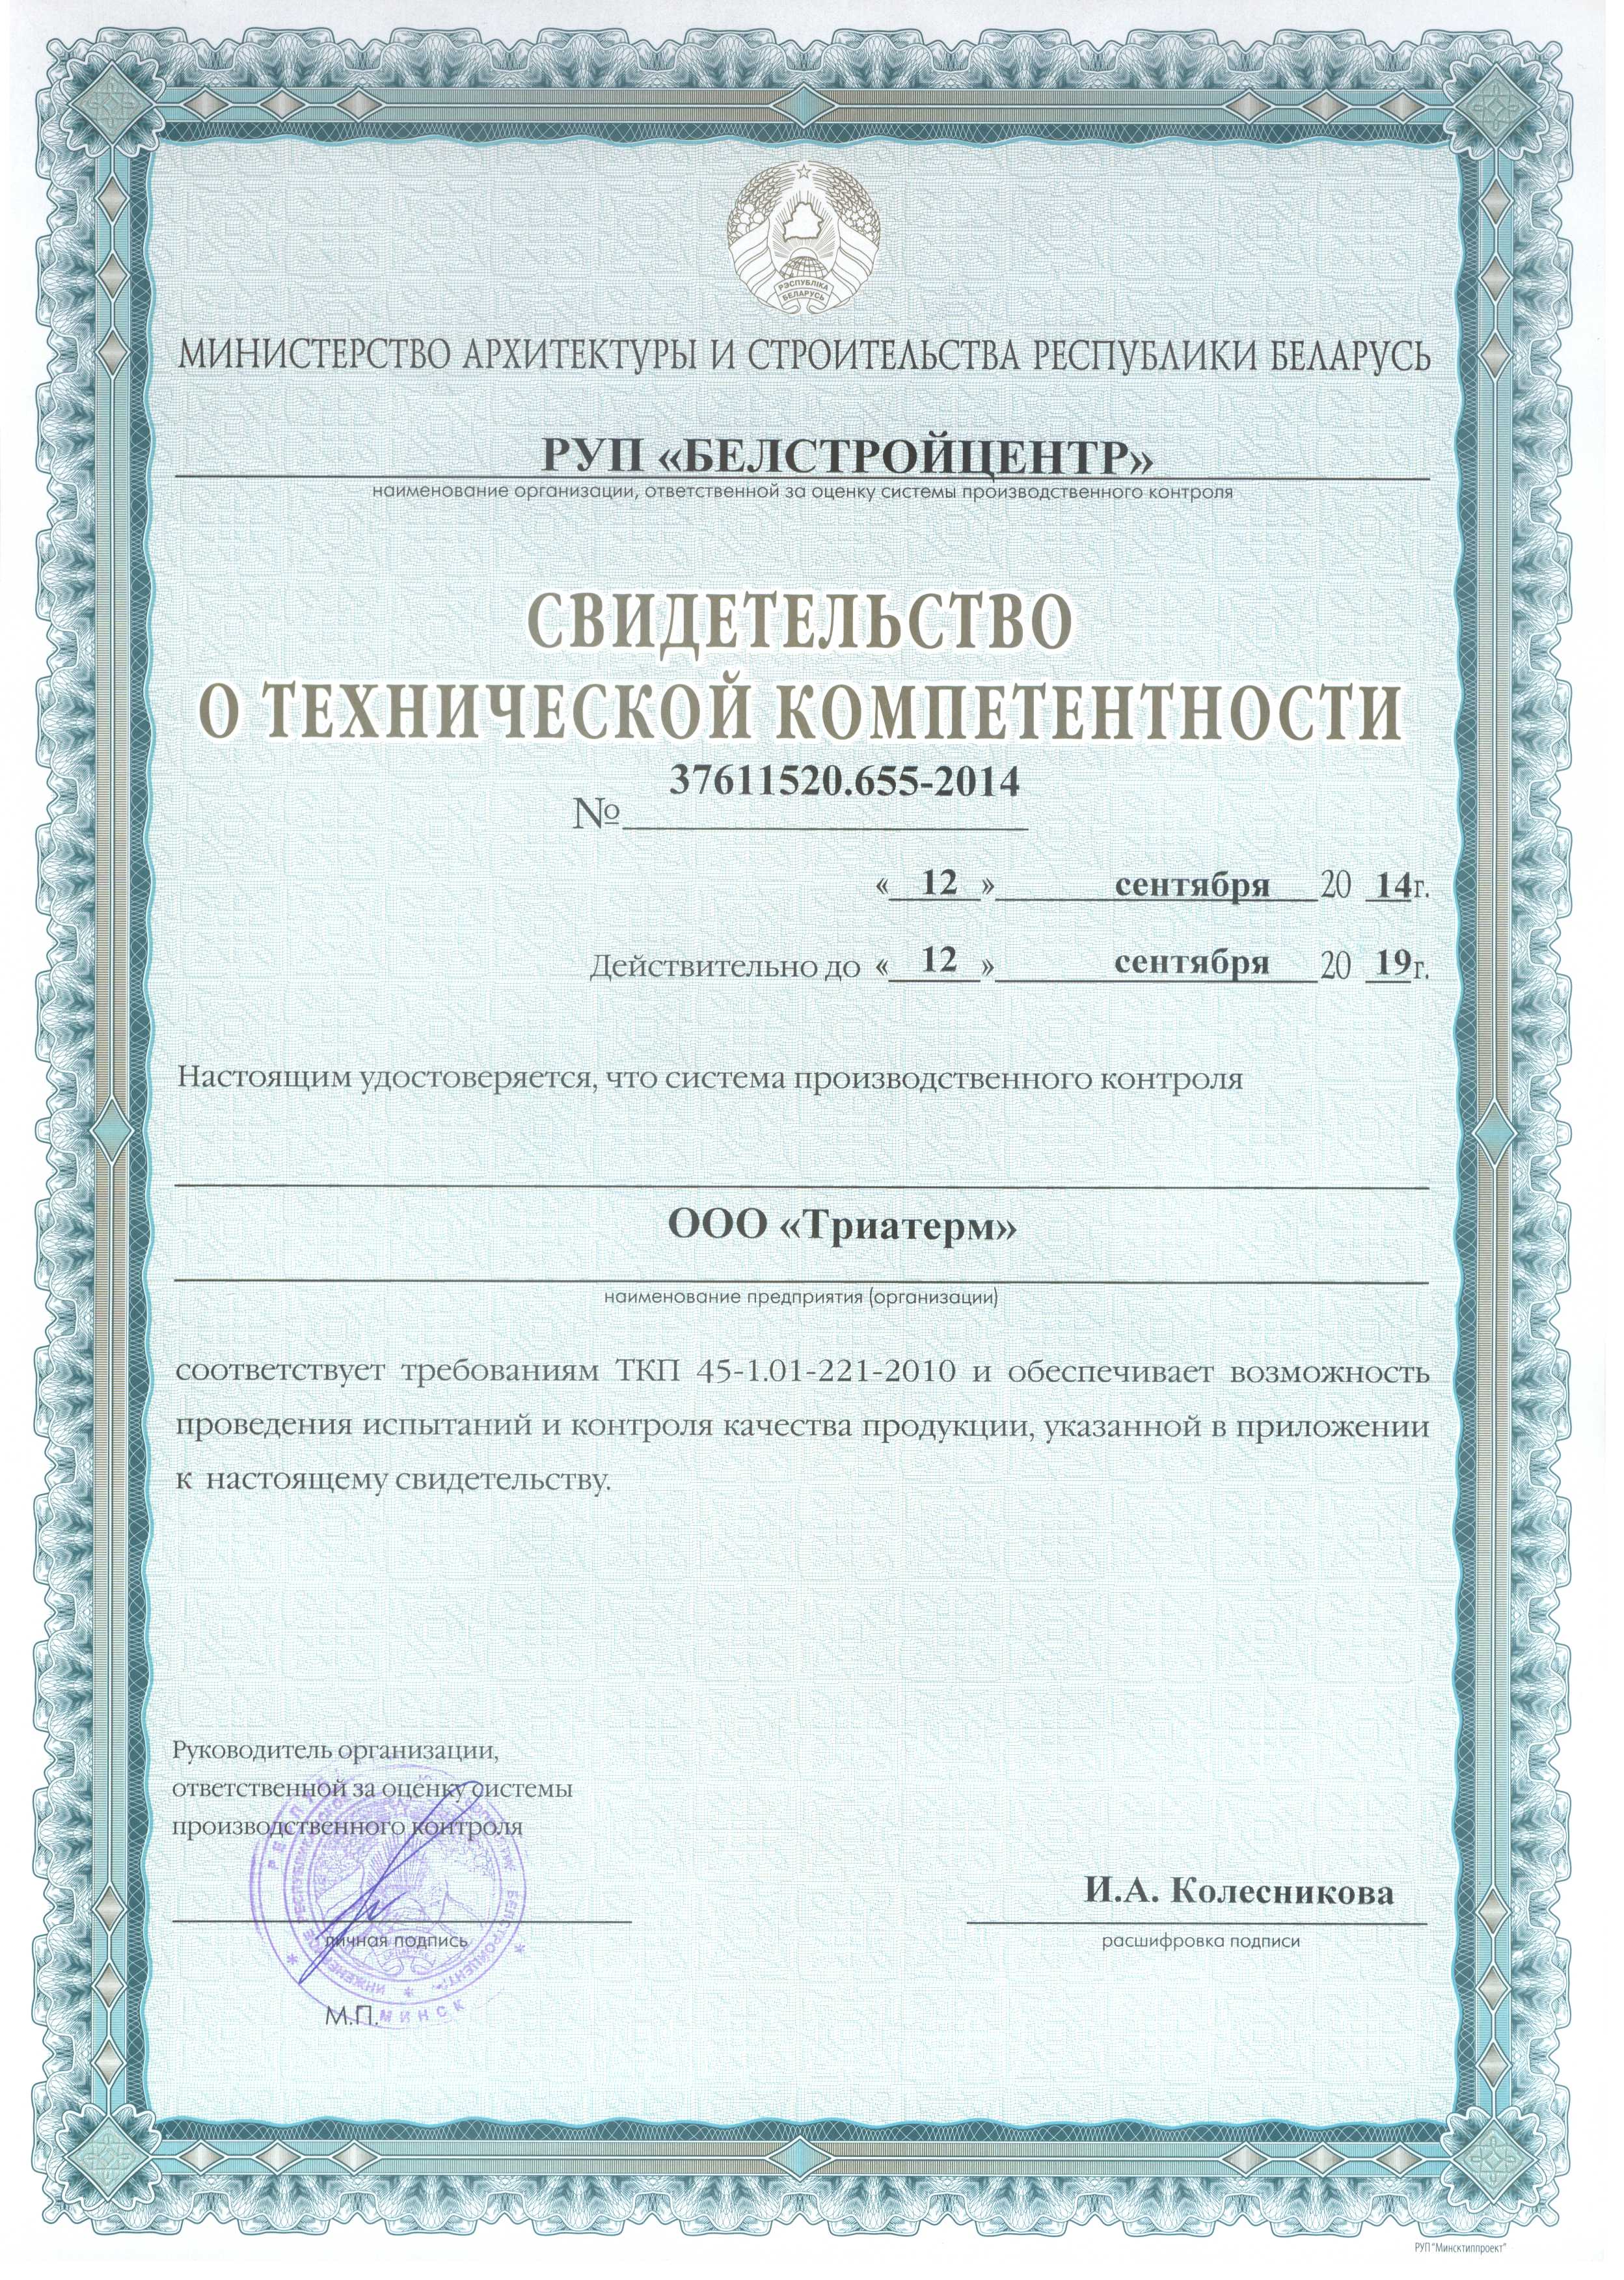 Свидетельство о технической комперентности Министерства архитектуры и строительства Республики Беларусь